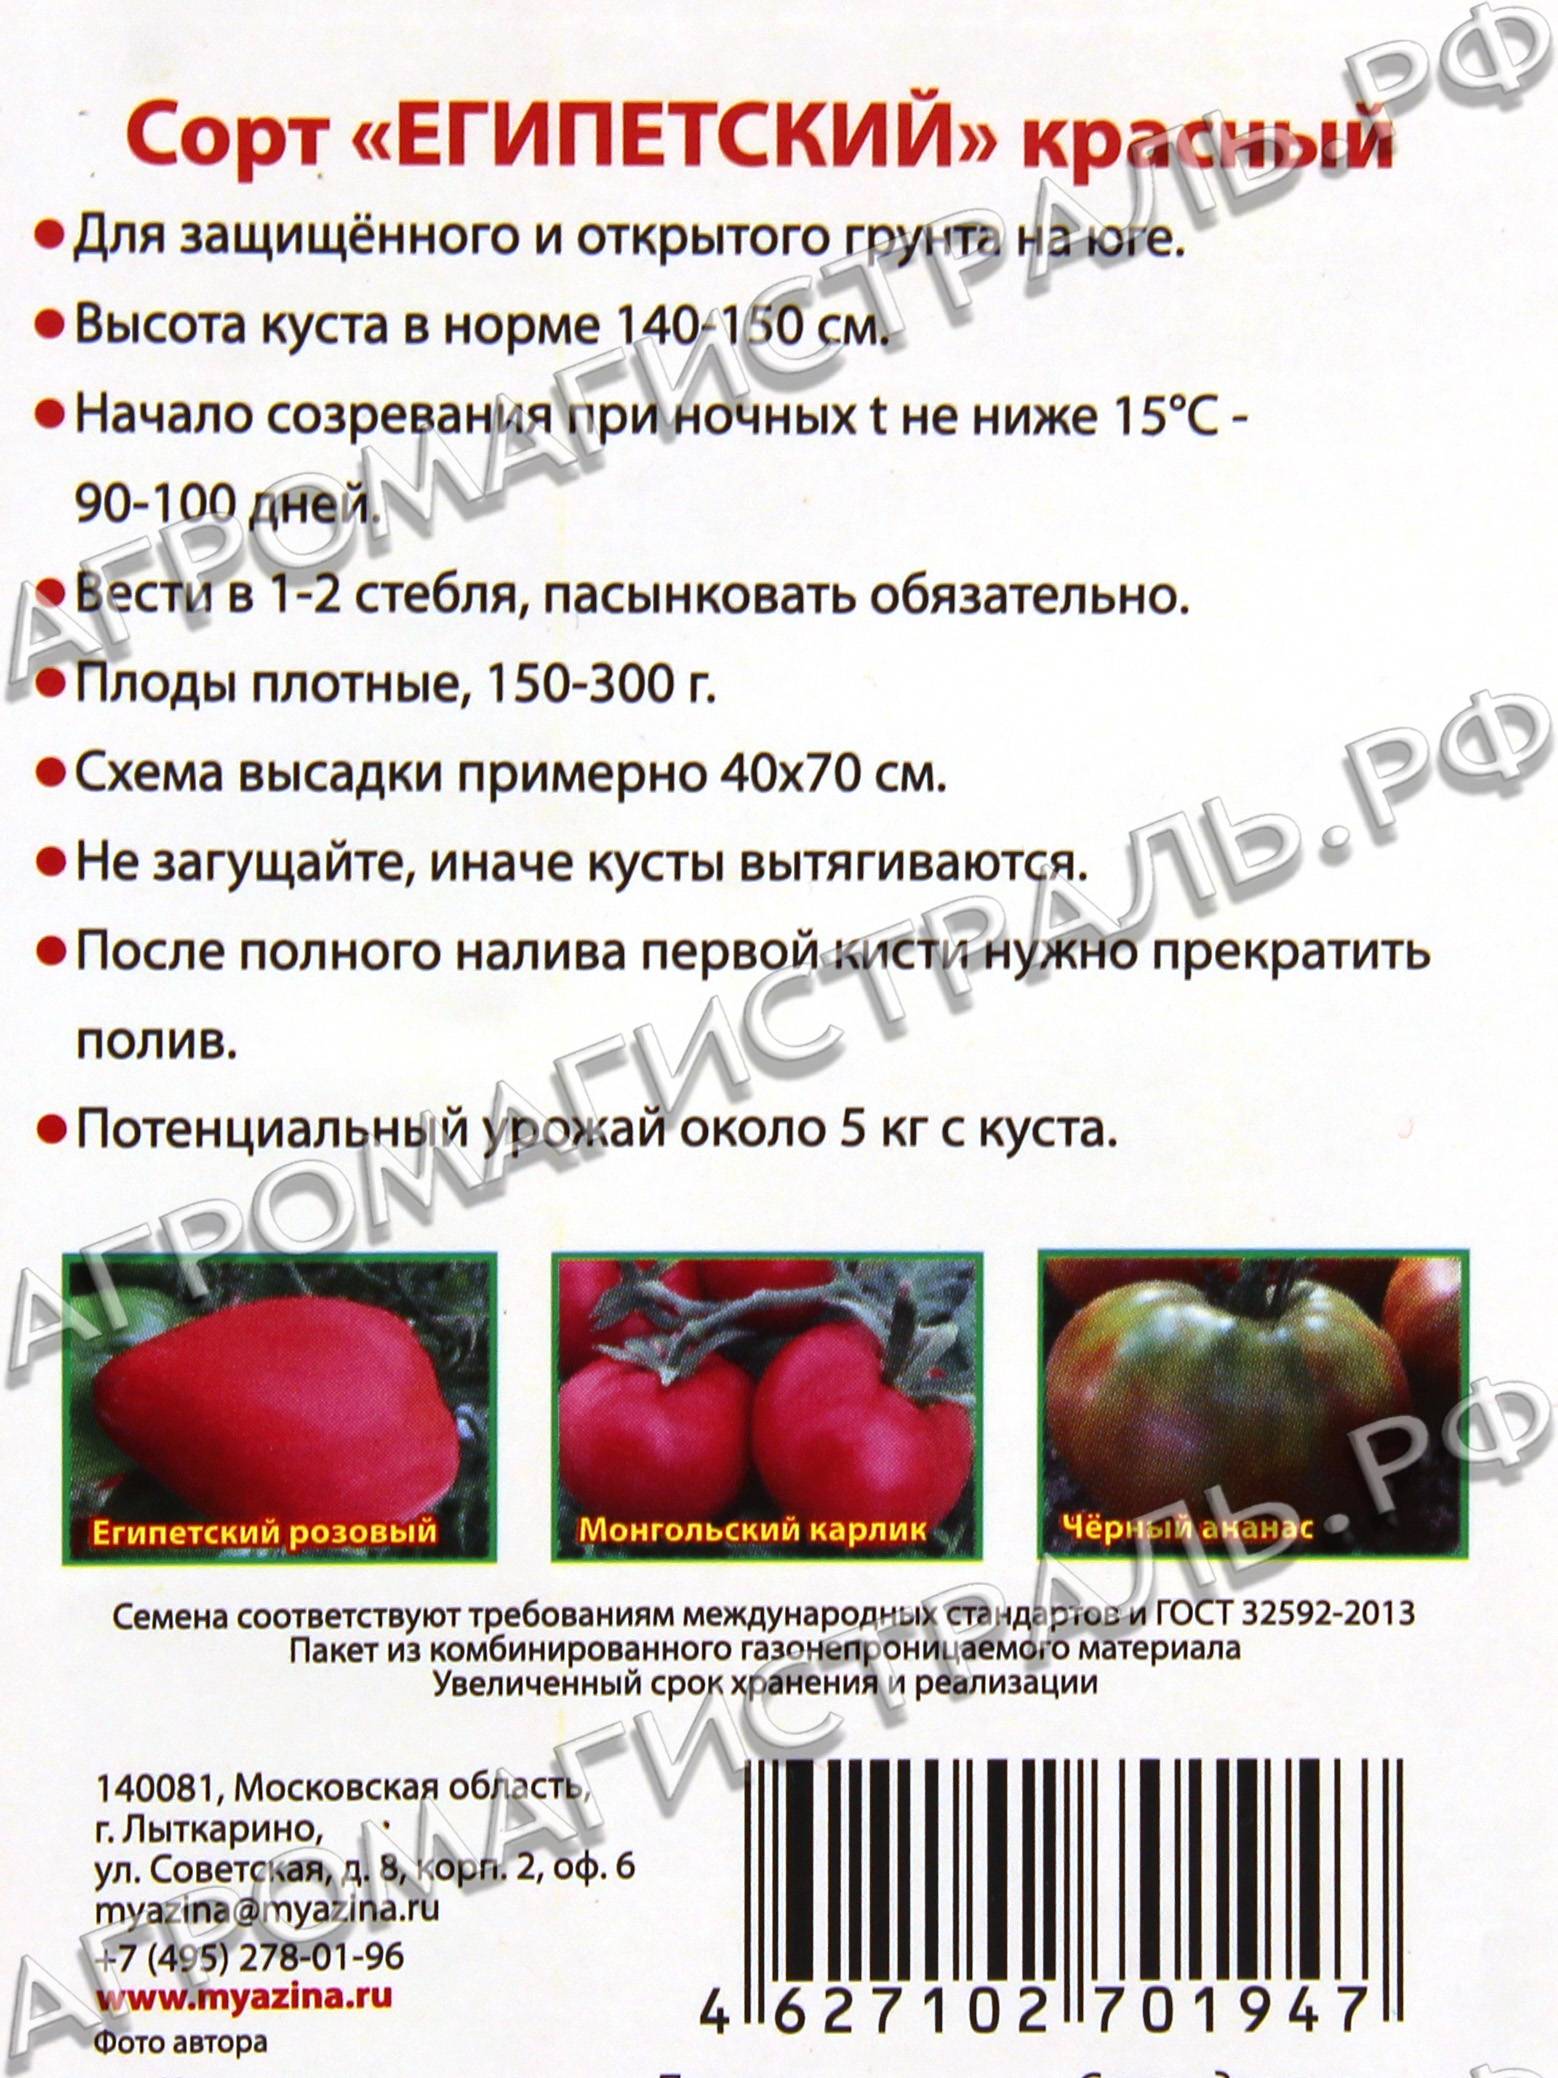 Сердцевидные сорта томатов с фото и описанием, достоинства и недостатки, какие лучше